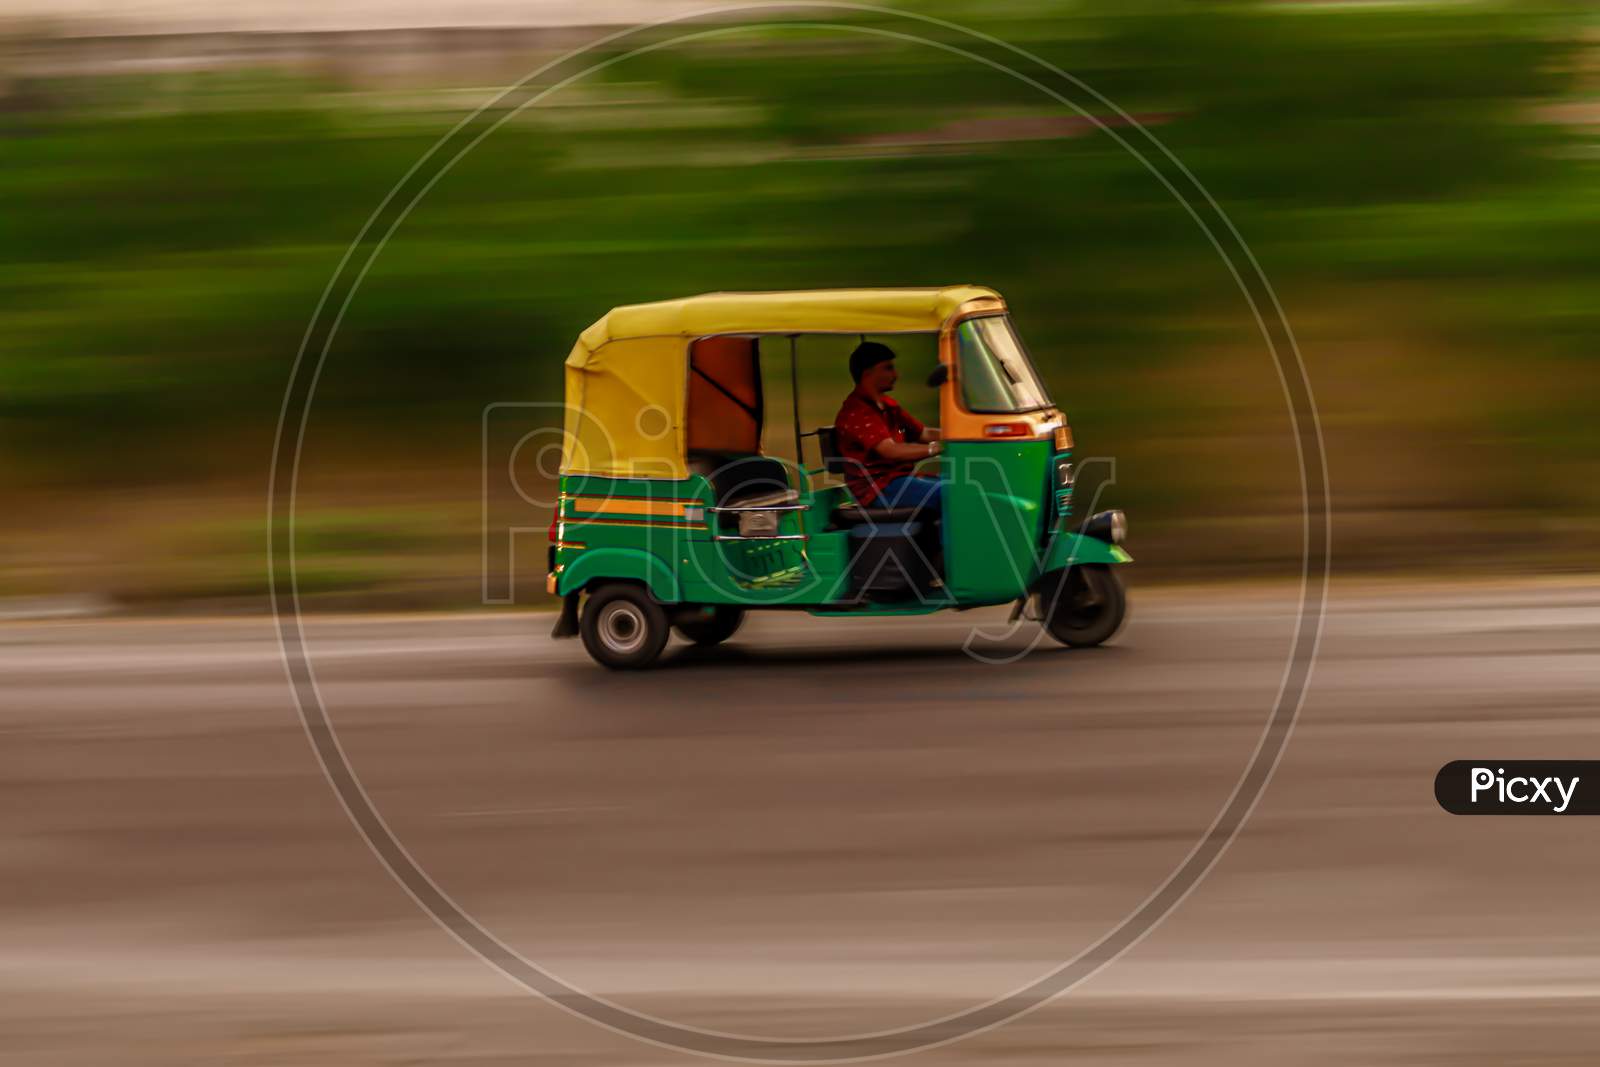 Auto rickshaw in motion